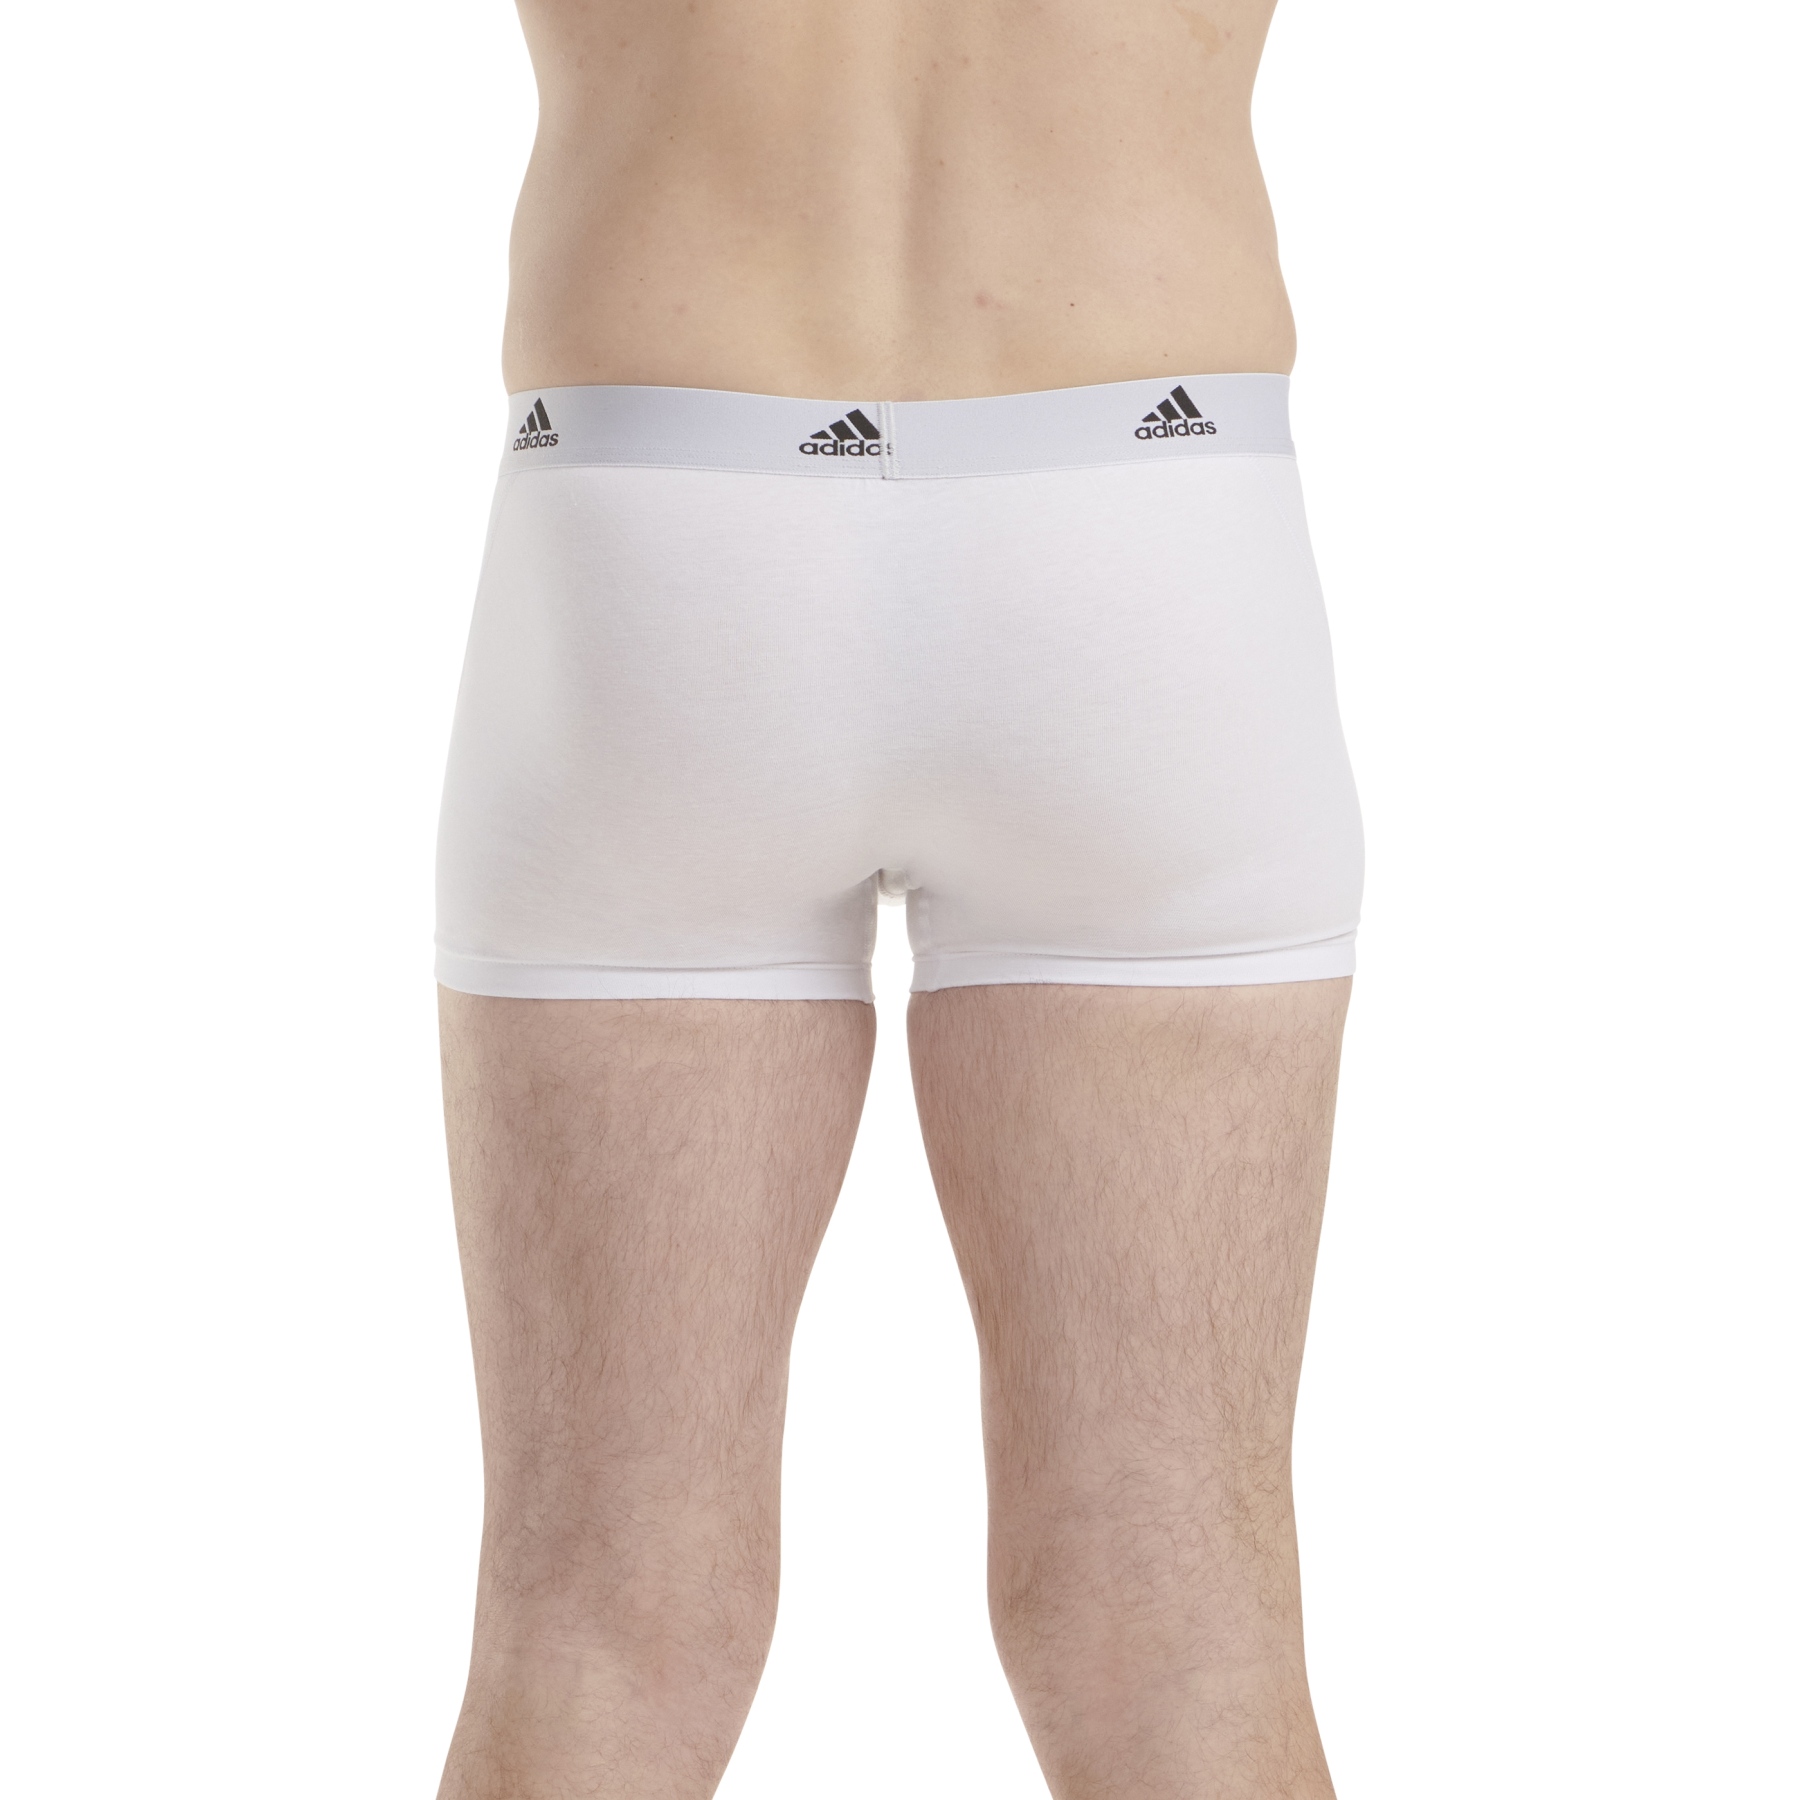 adidas Sports Underwear Active Flex Cotton Trunk Men - 3 Pack